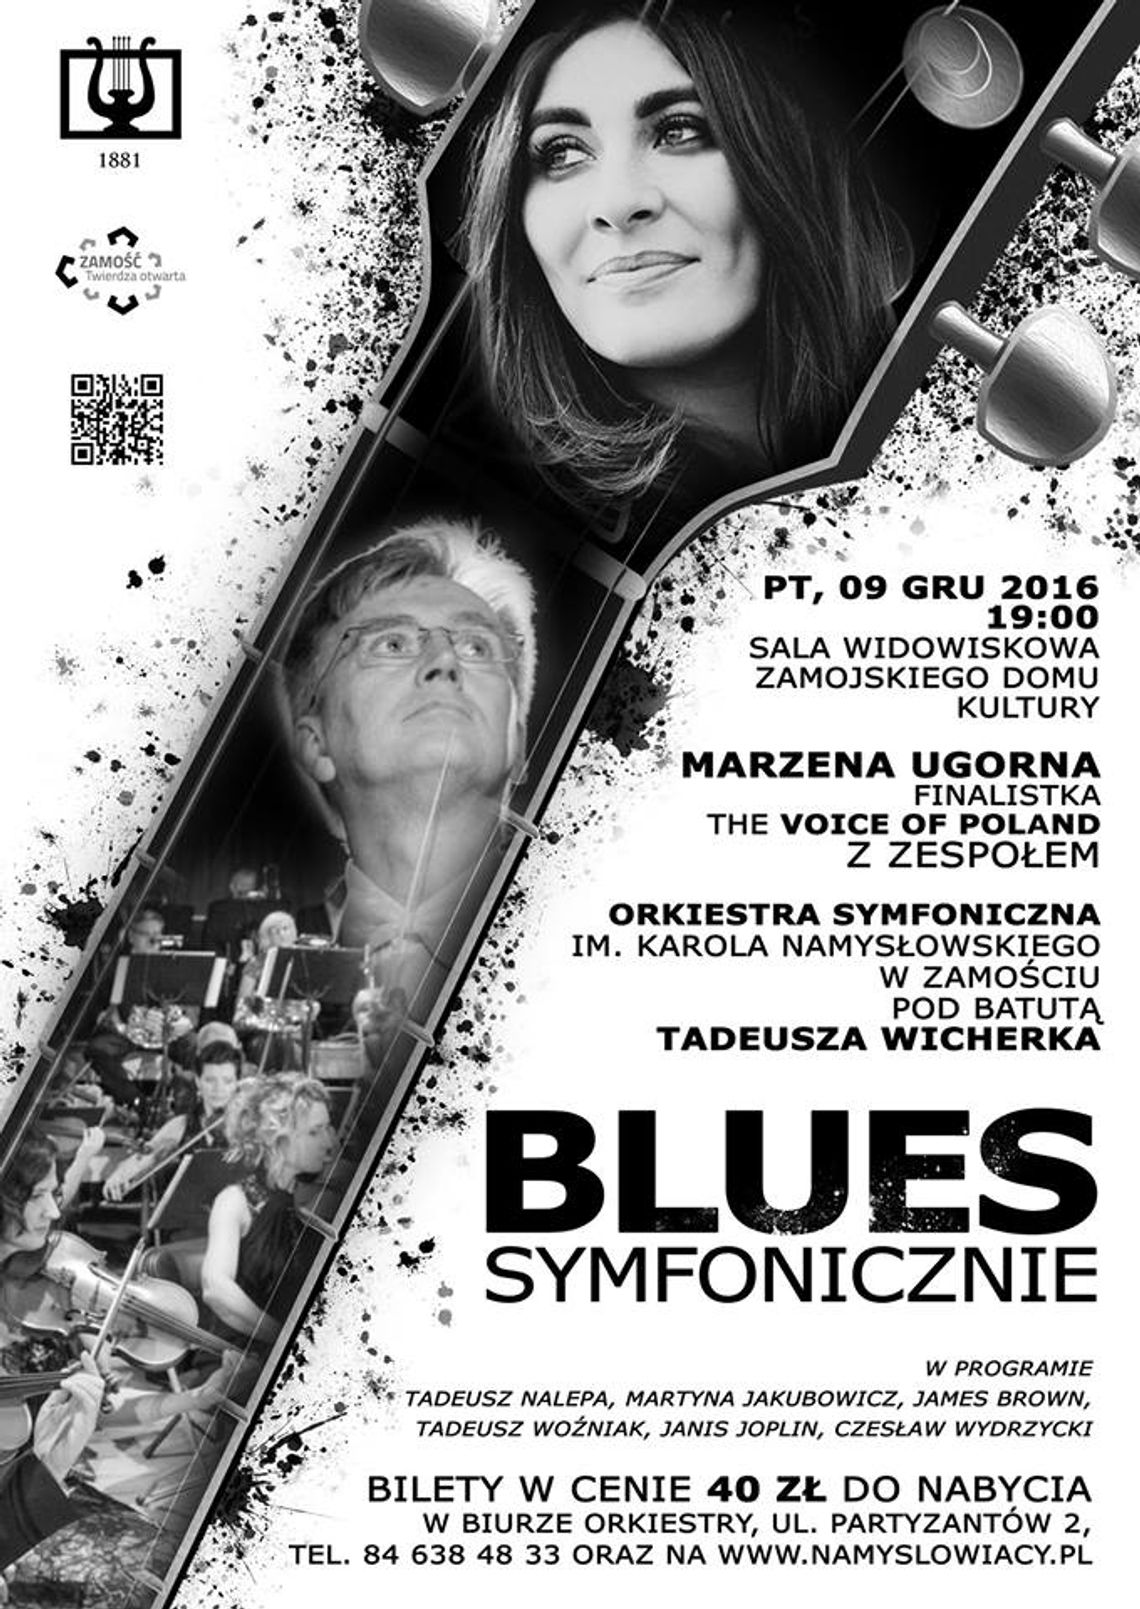 Blues Symfonicznie z Marzeną Ugorną w ZDK